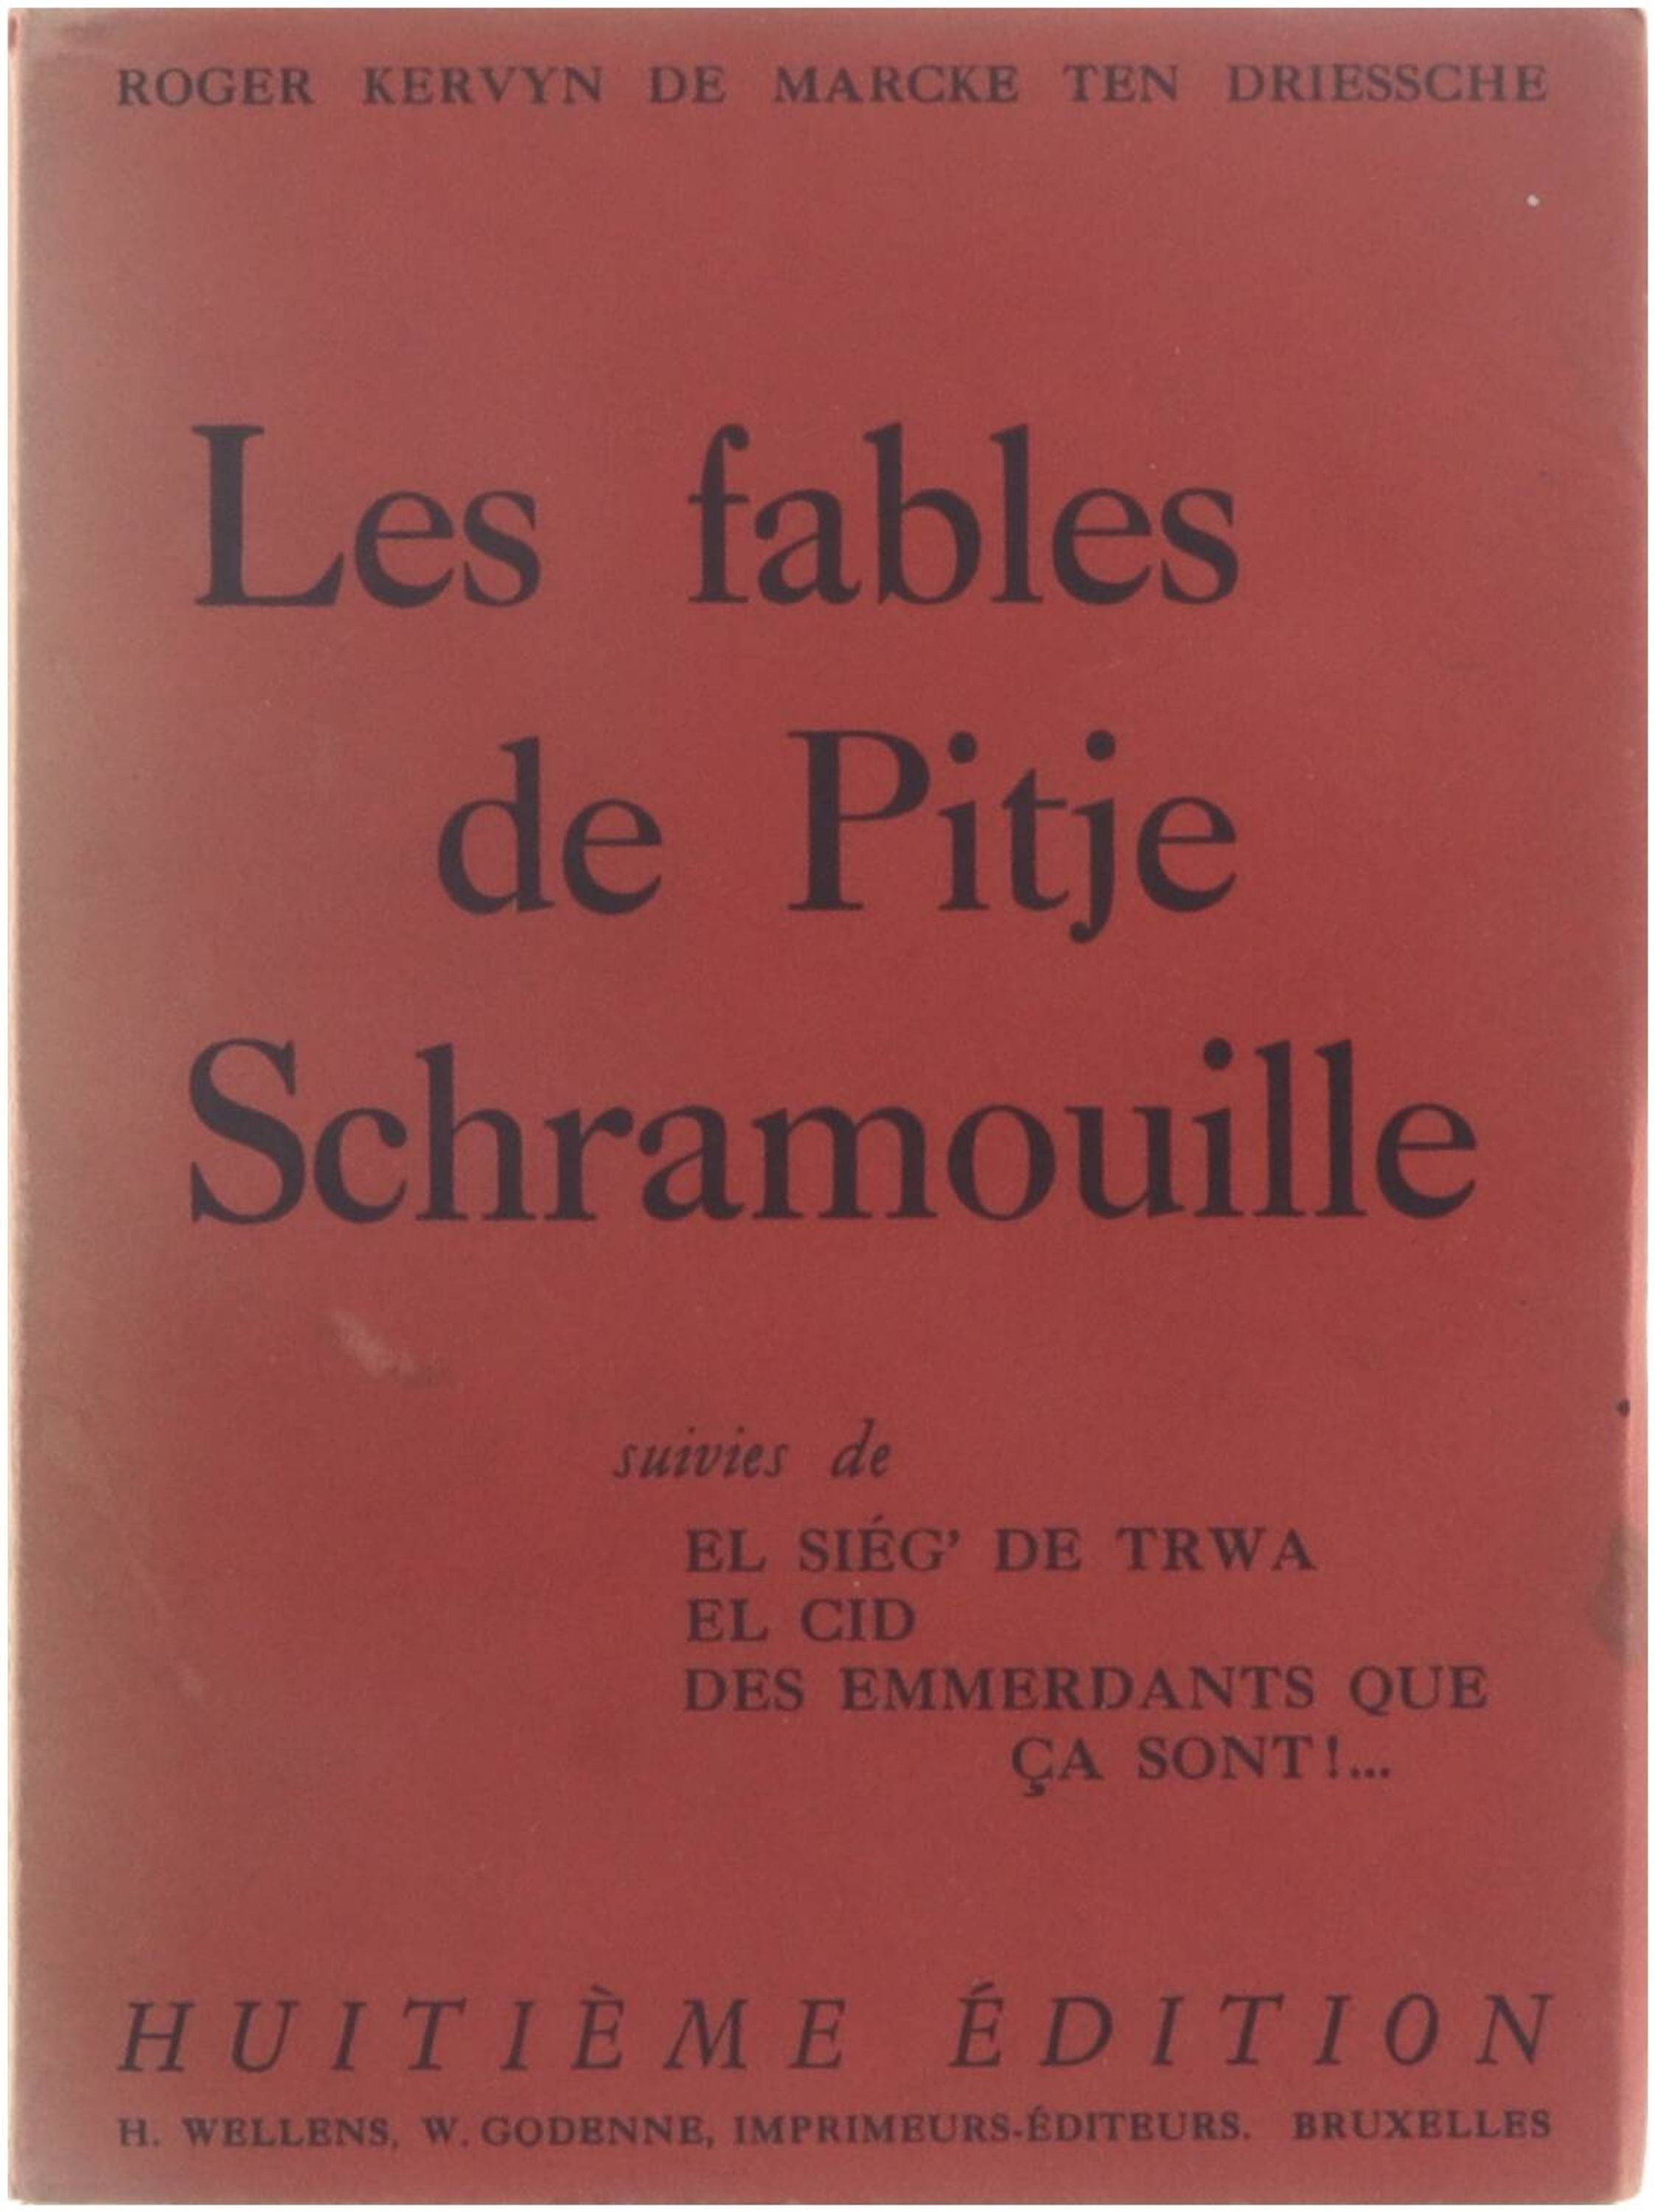 Les fables de Pitje Schramouille